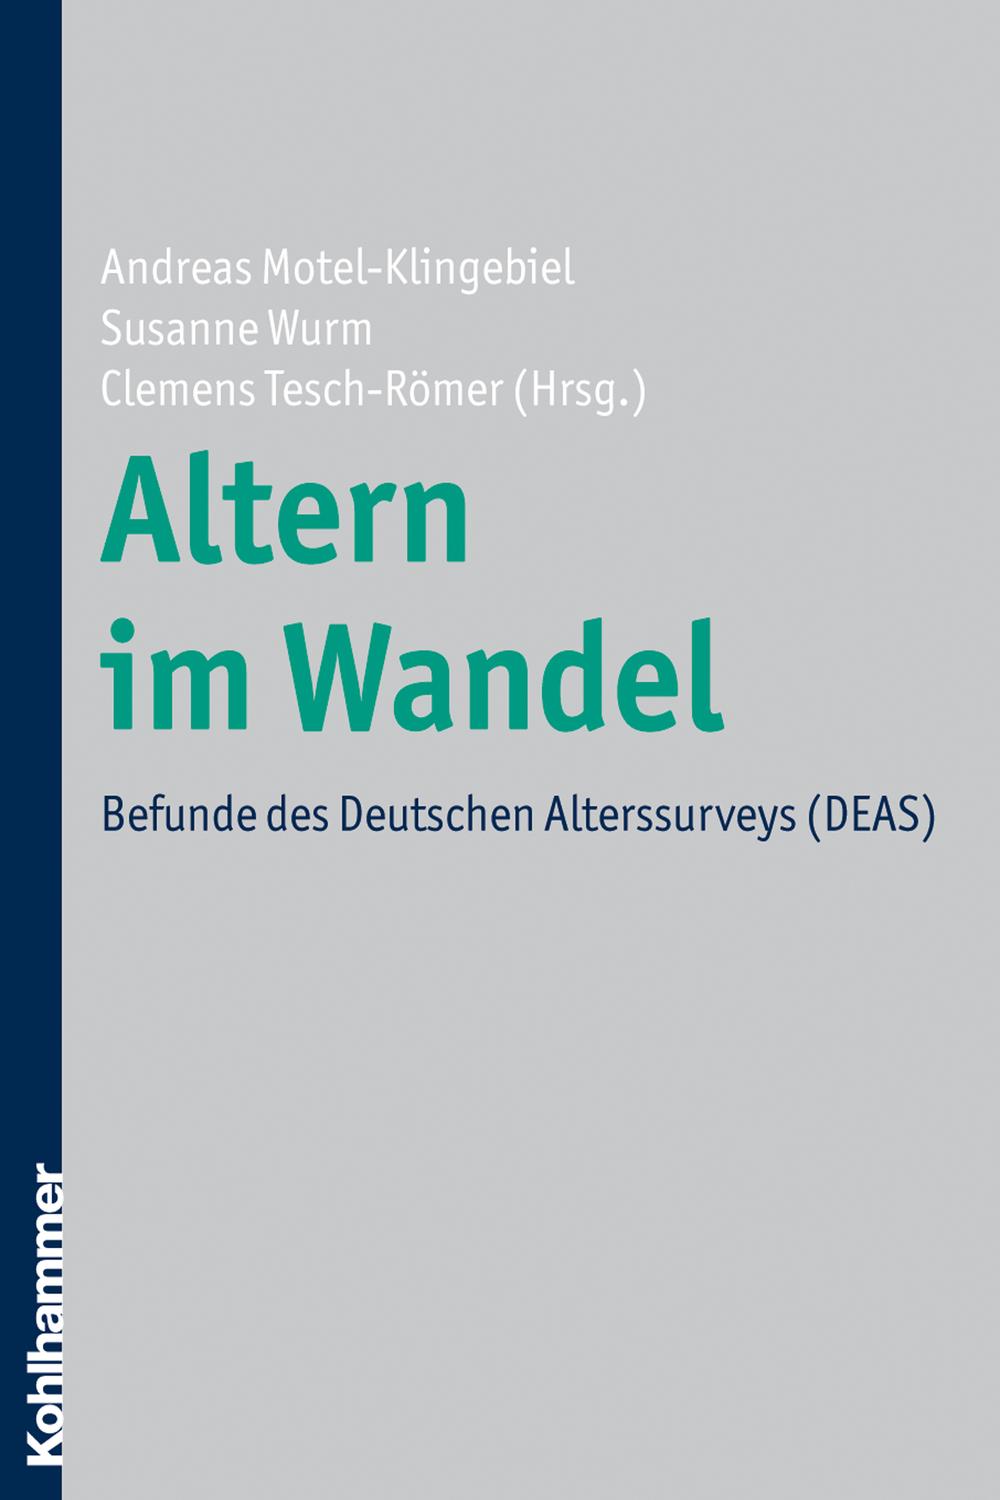 Altern im Wandel - Andreas Motel-Klingebiel, Susanne Wurm, Clemens Tesch-Römer